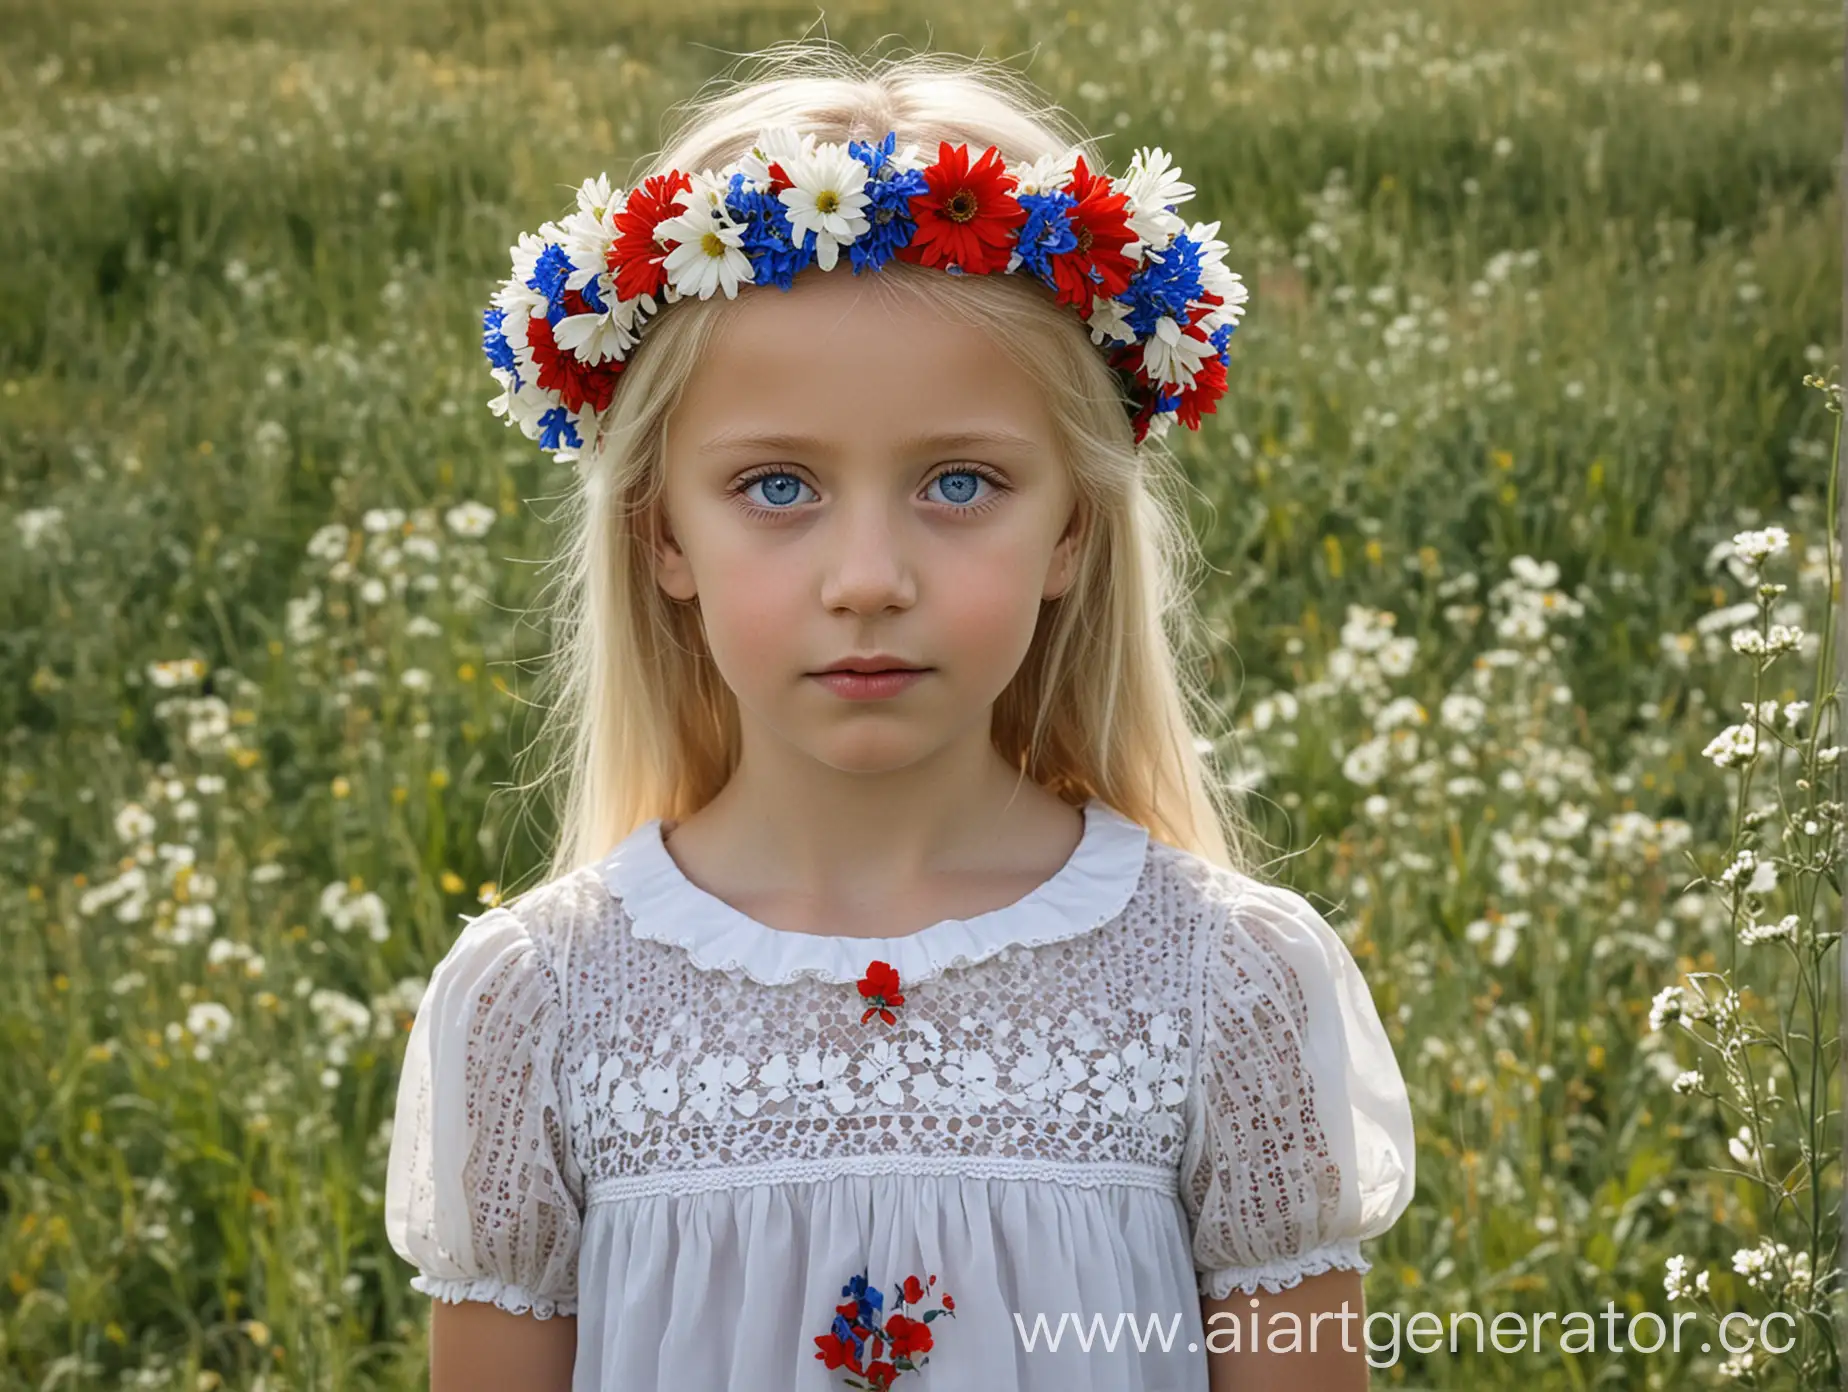 Белокурая девушка с голубыми глазами и венком цветов на голове, в поле, платье выглядит как триколор флага России - белый, синий, красный